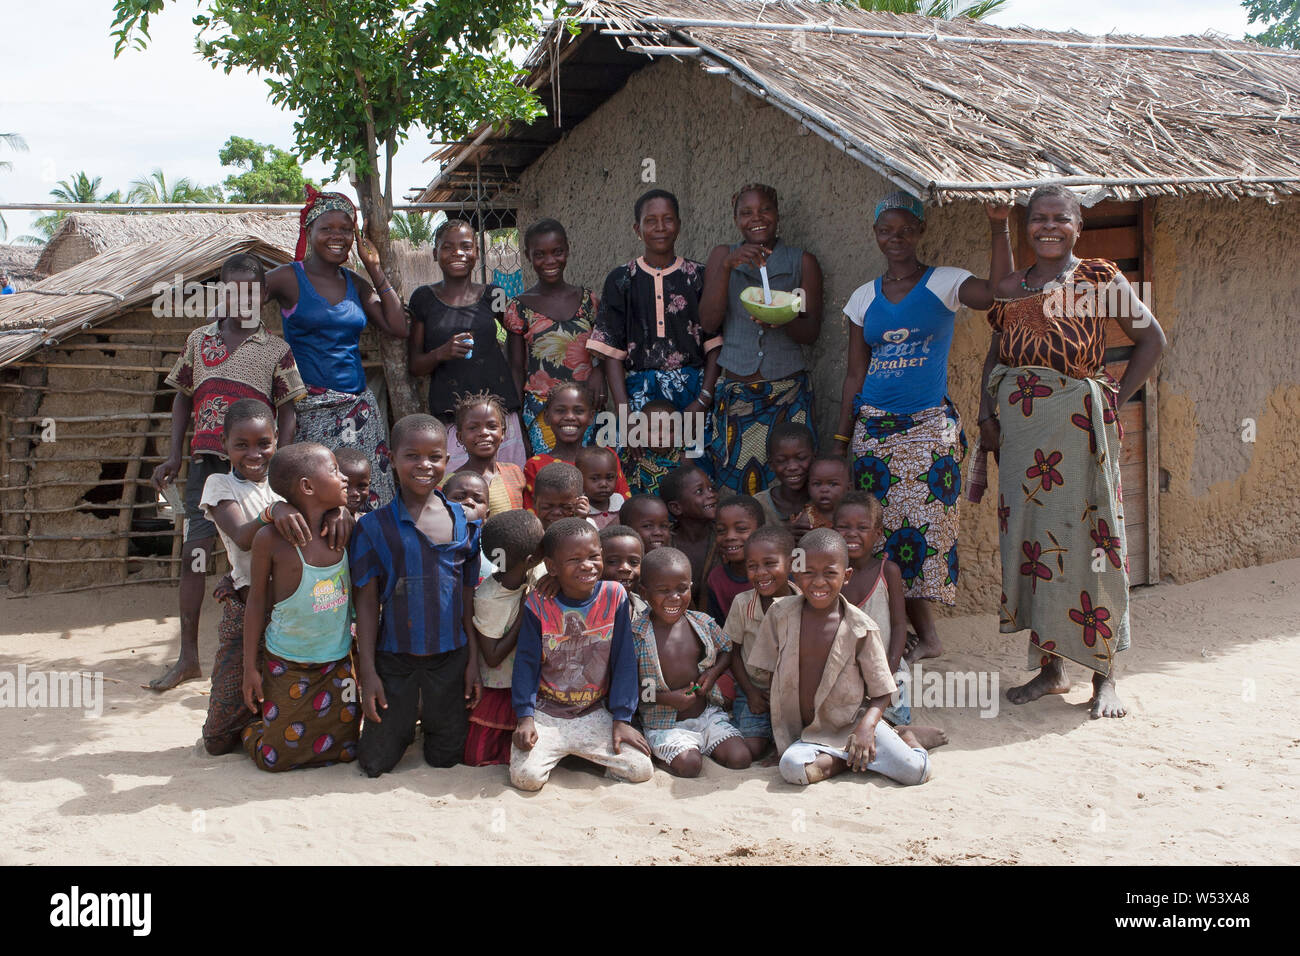 Grupo de aldea del programa de desarrollo comunitario, apoyado por la compañía minera. Los ingresos ayudan a mejorar los medios de vida, como las tasas escolares y los uniformes. Foto de stock